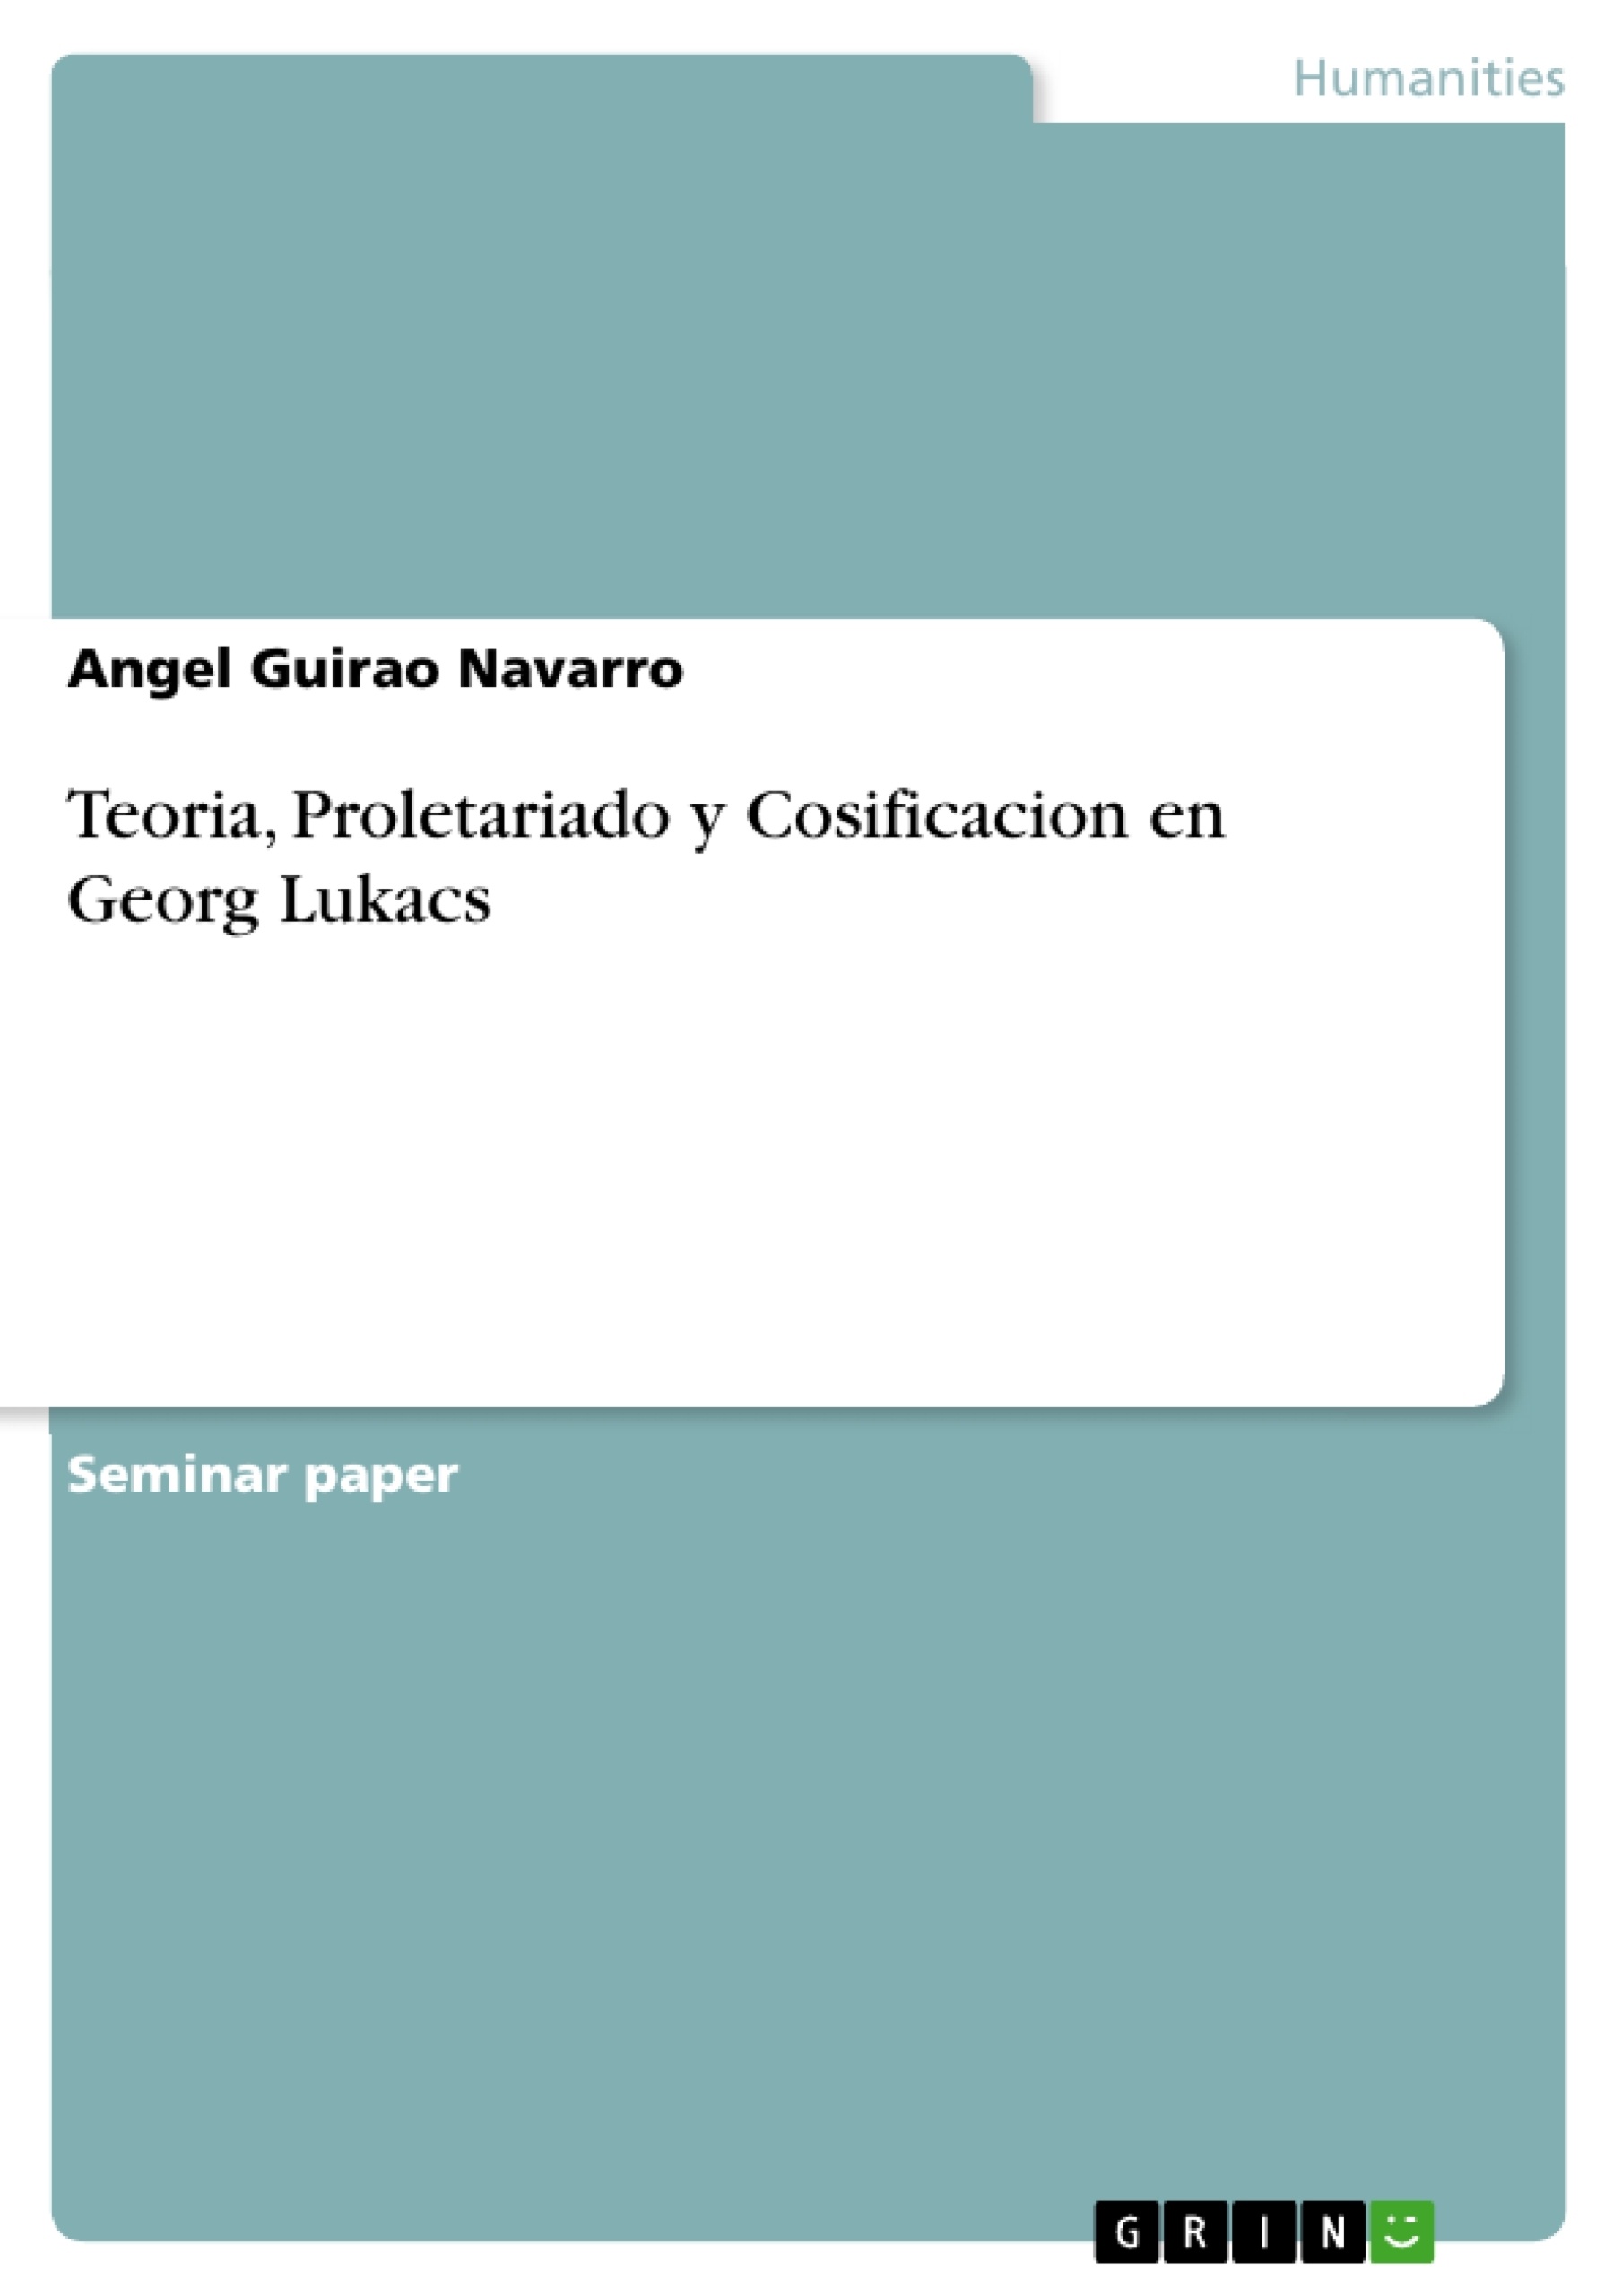 Titre: Teoria, Proletariado y Cosificacion en Georg Lukacs